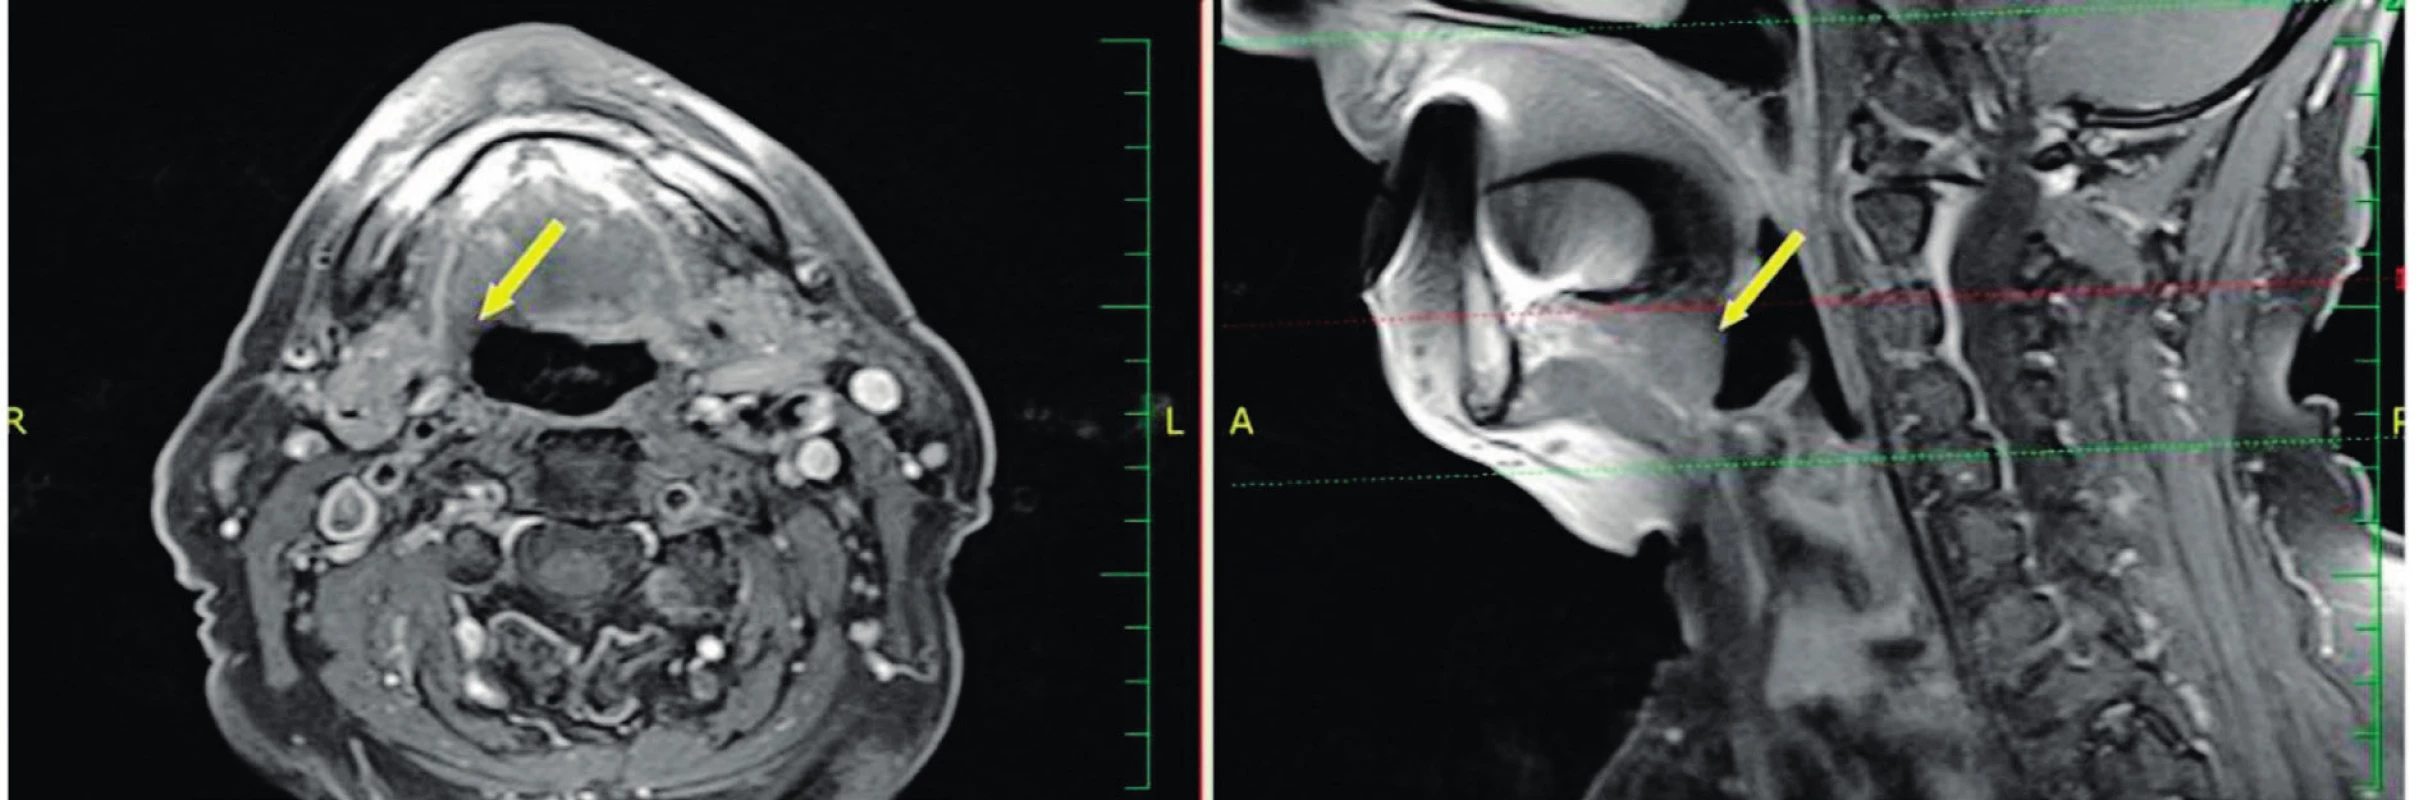 Oba snímky MR T1 s potlačením signálu tuku postkontrastně - šipka ukazuje na oblast kořene jazyka 1 rok po TORS.